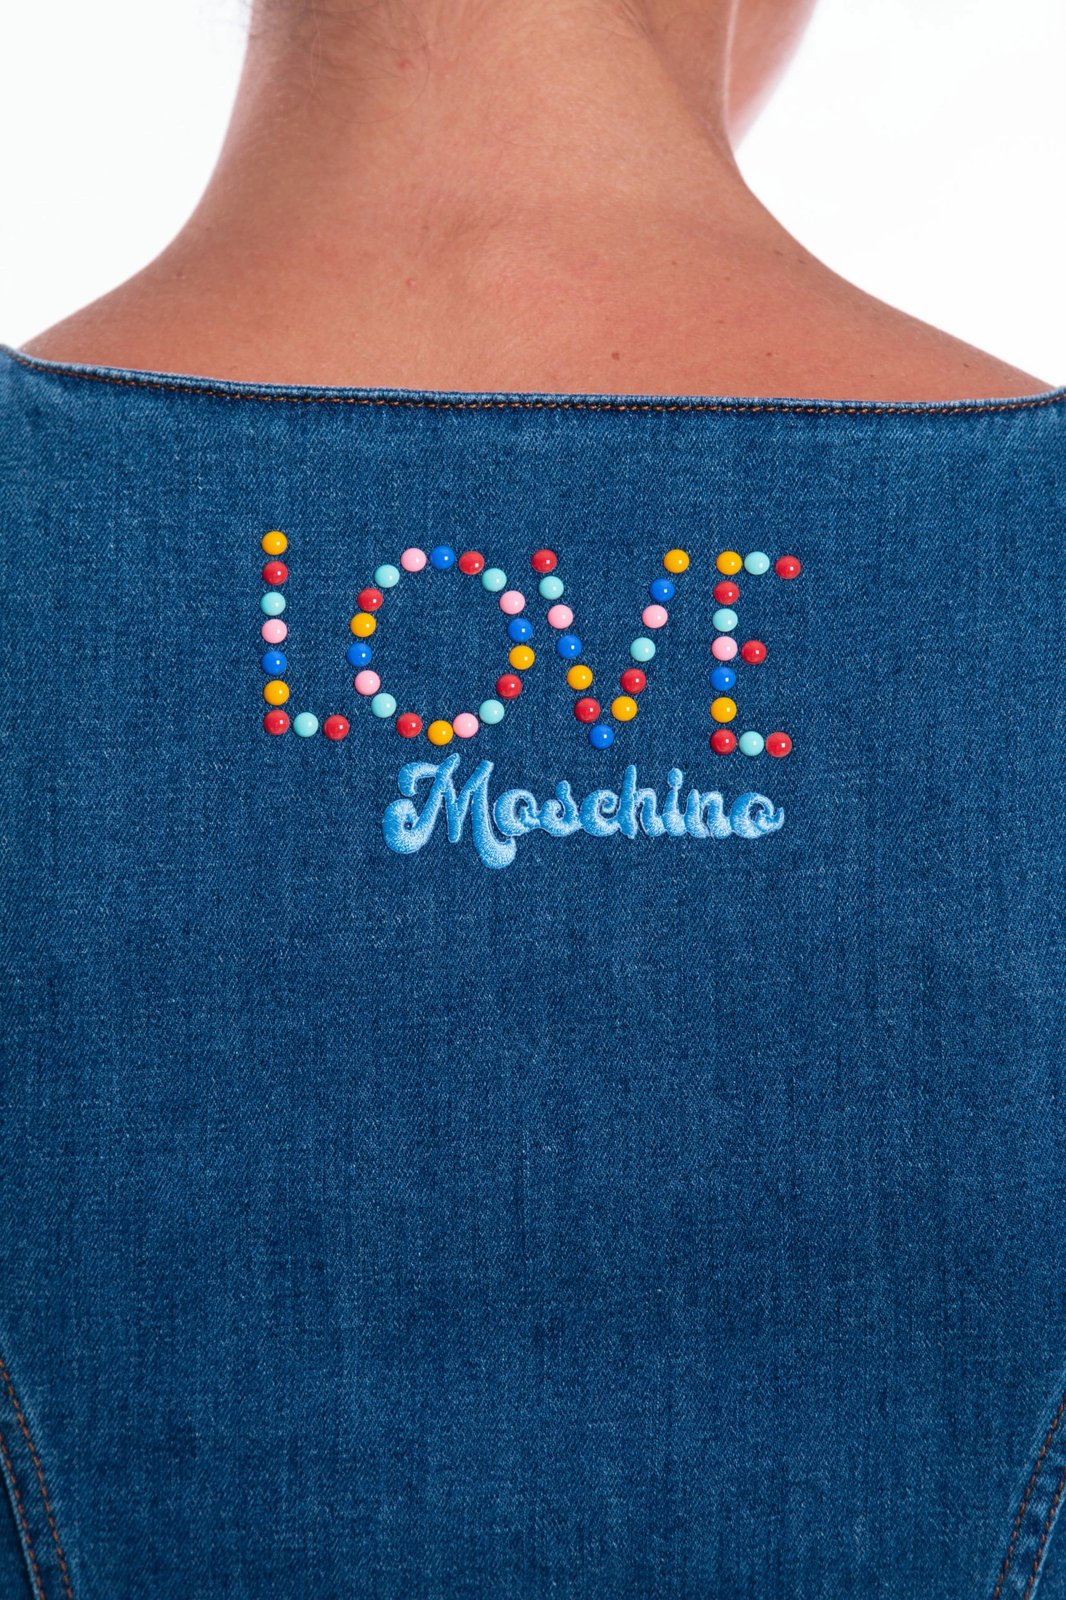 Fustan për femra Love Moschino, i kaltër 